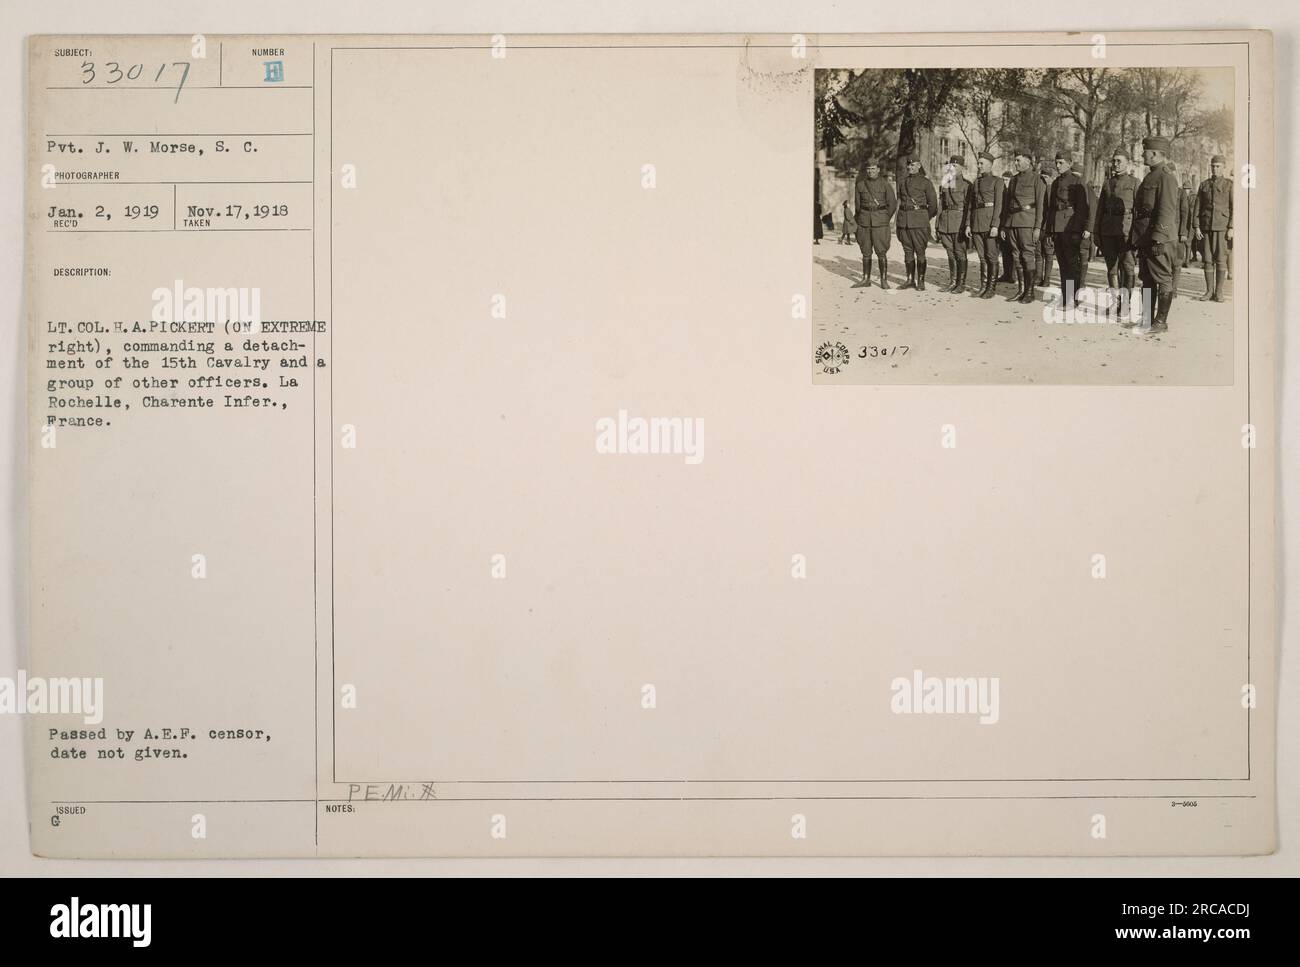 VP J.W. Morse, S.C., a photographié le lieutenant-colonel H.A. Pickert, commandant un détachement du 15th Cavalry, avec un groupe d'autres officiers. La photo a été prise à la Rochelle, Charente Inf., France. La date exacte du passage par le censeur de l'A.E.F. est inconnue, mais elle a été reçue et décrite le 2 janvier 1919. Cette image appartient à la collection de photographies des activités militaires américaines pendant la première Guerre mondiale (numéro de photographe H) et des notes indiquent qu'elle a été émise (approximativement) vers le 17 novembre 1918. Son authenticité est confirmée par G PEMI NOTES 334/7. Banque D'Images